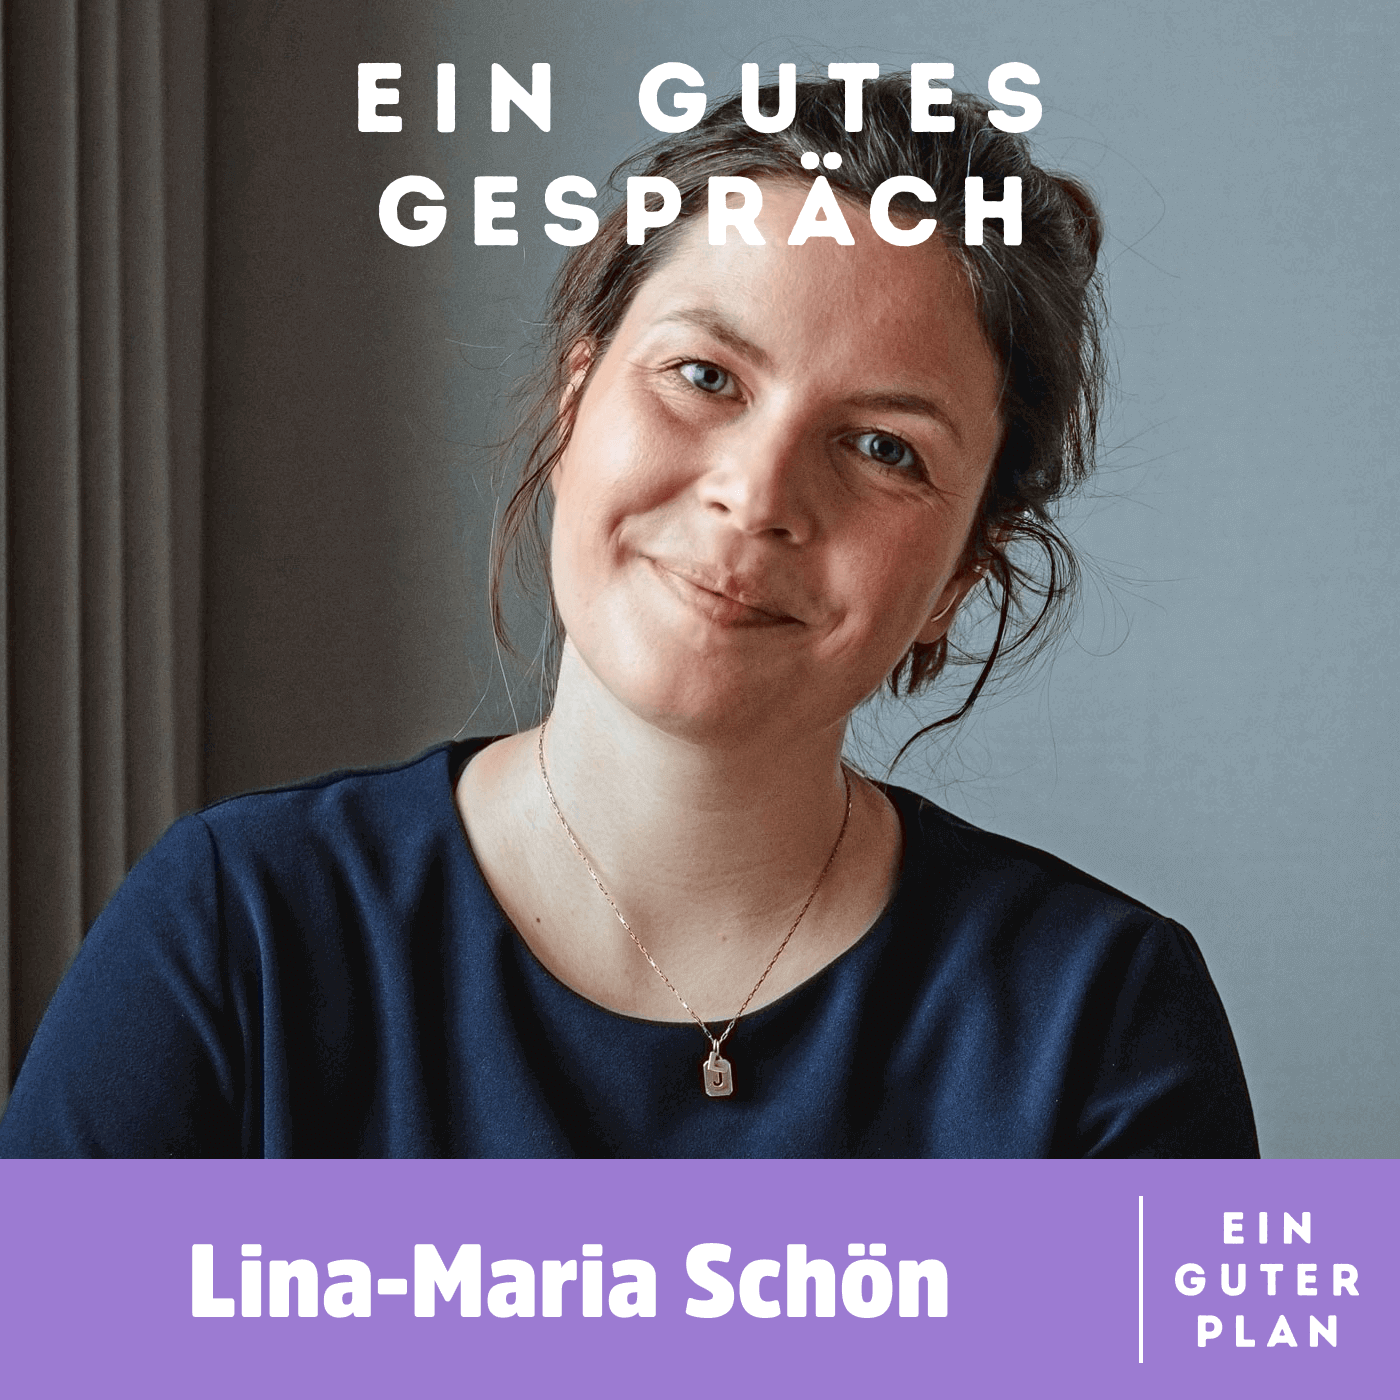 Lina-Maria Schön, wie schläft man besser?